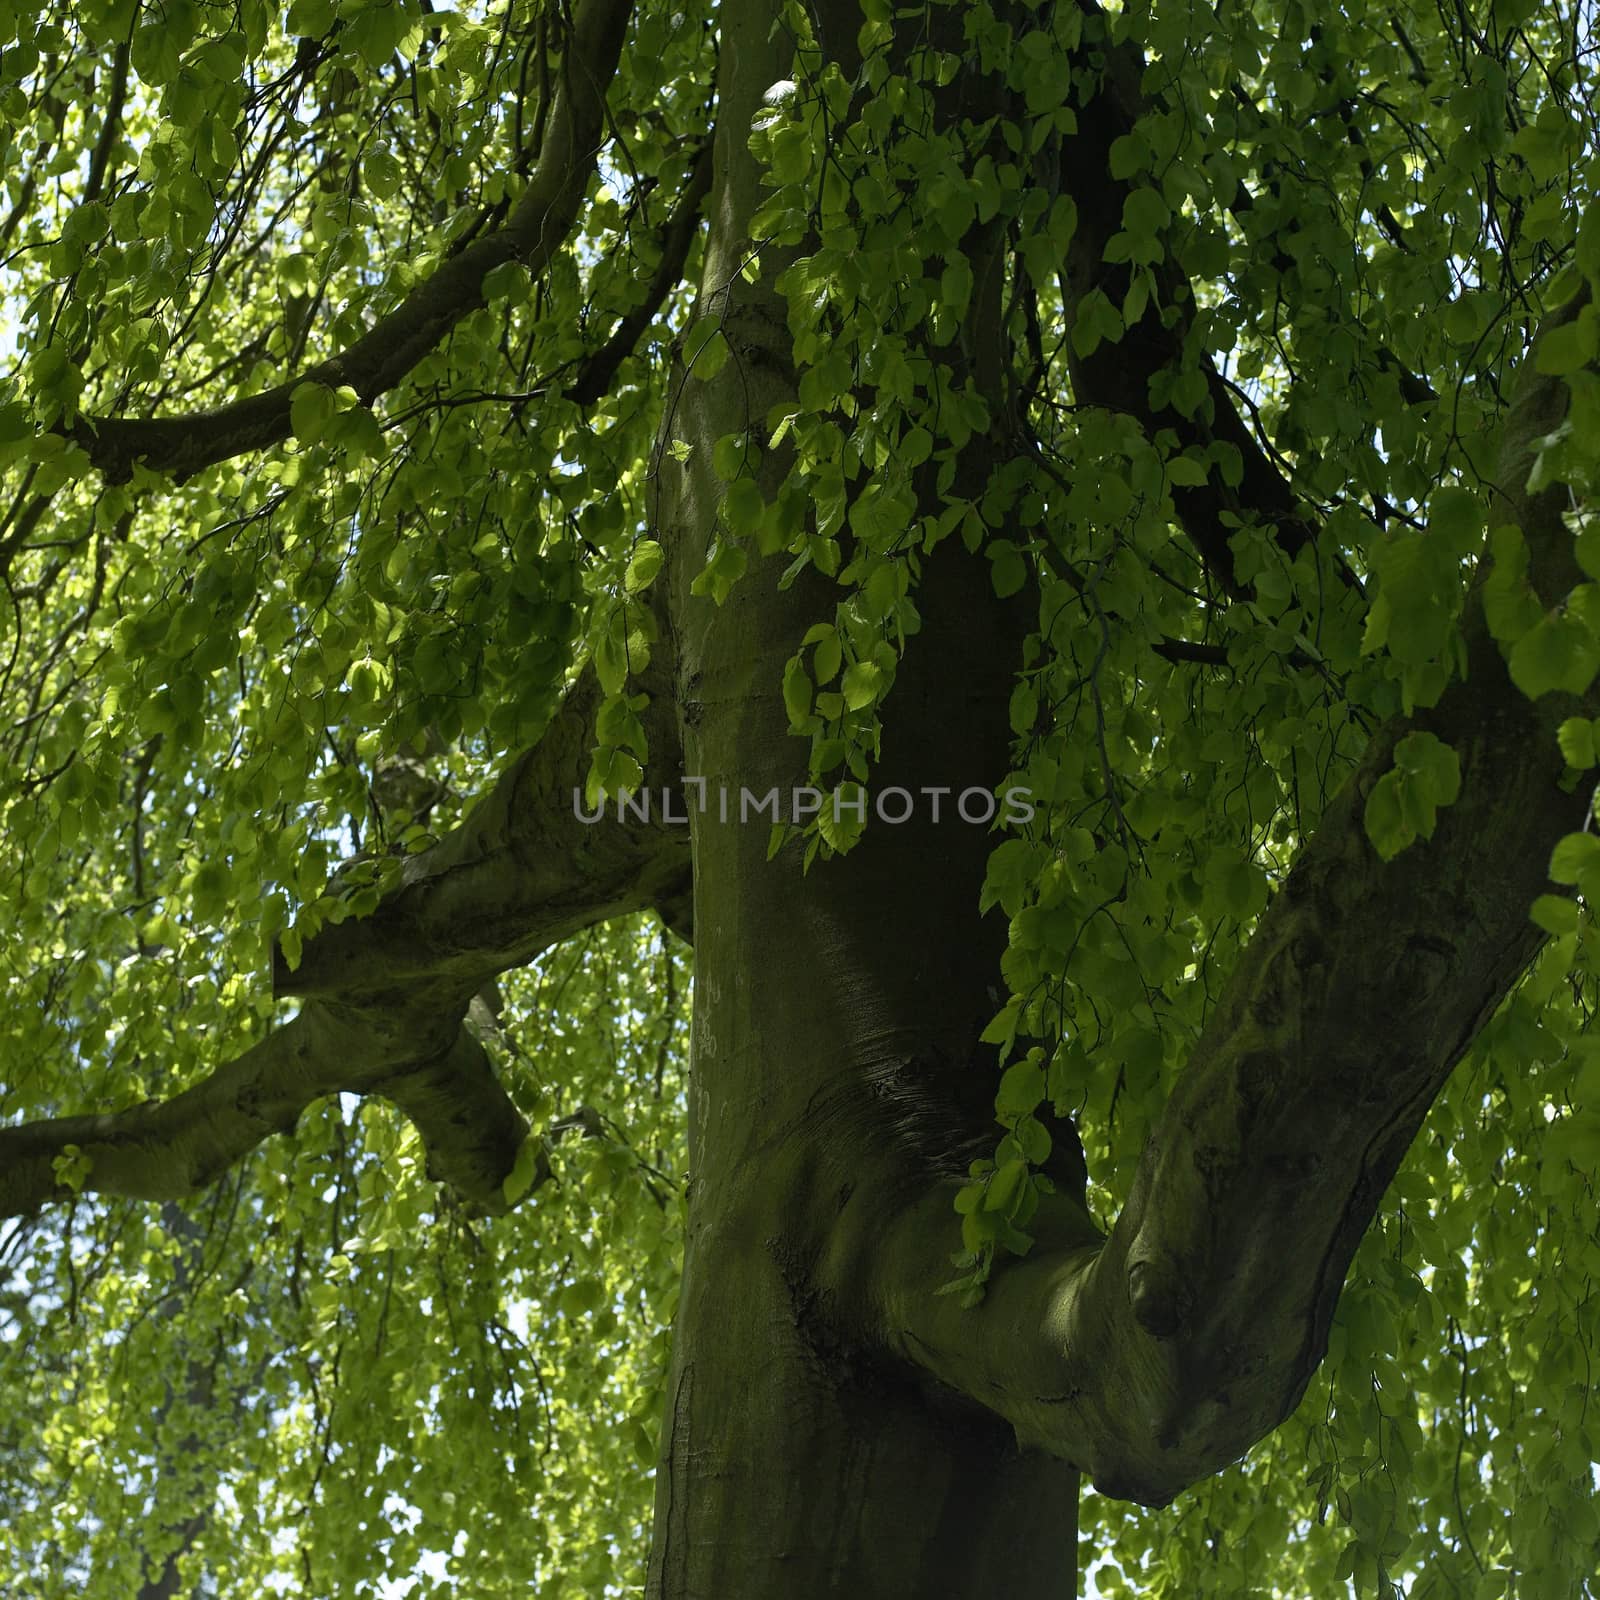 Inside a green leafy tree